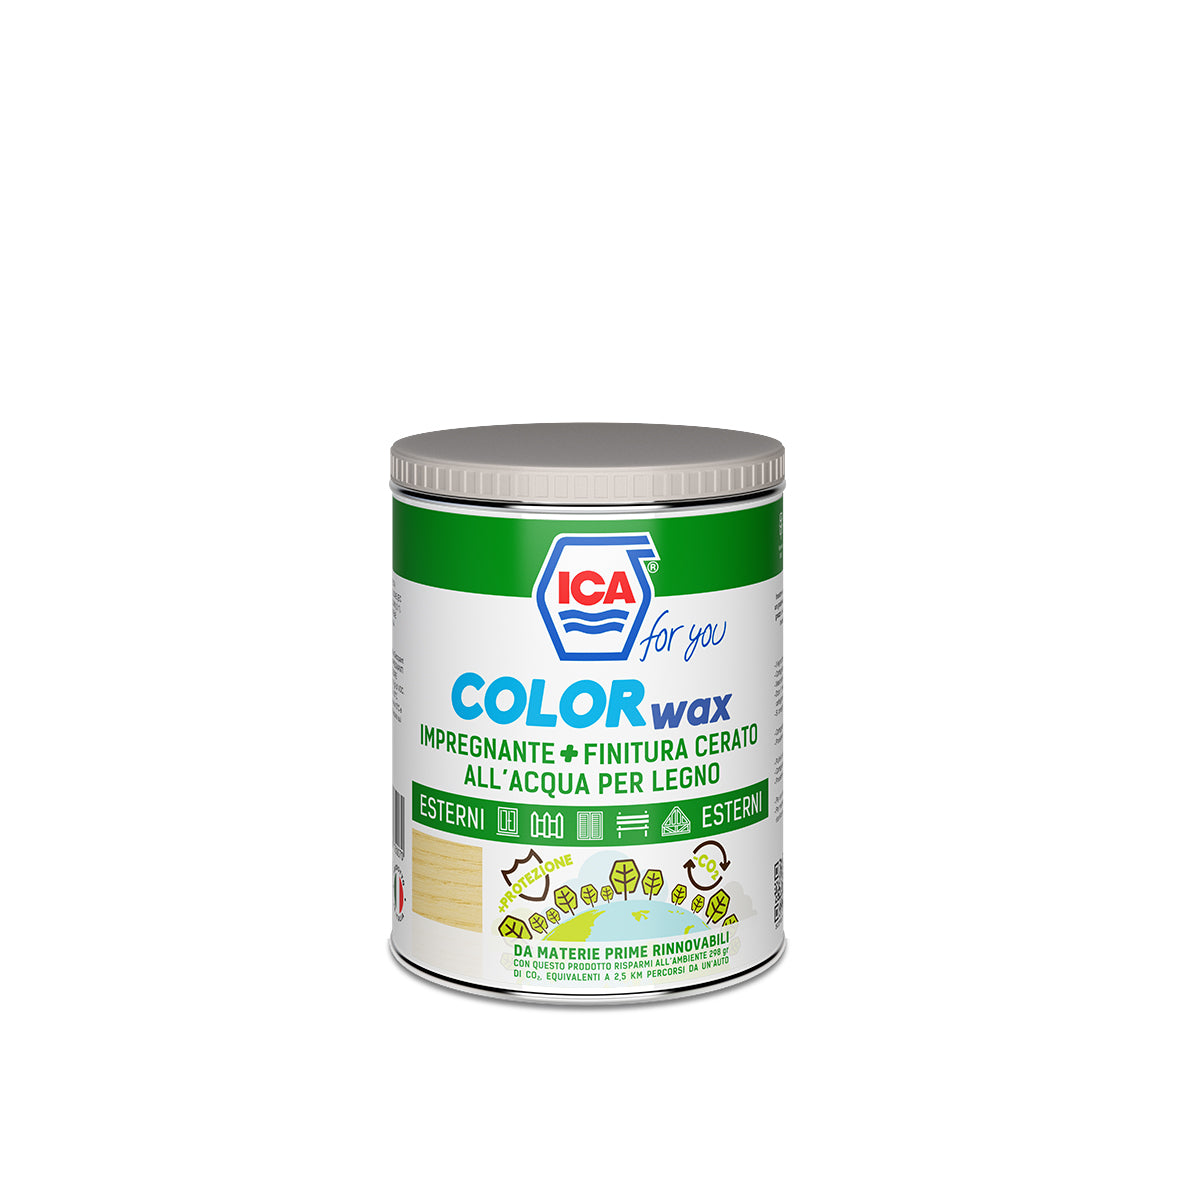 ICA Color Wax - Impregnante + finitura cerato all'acqua per legno - 2,5L